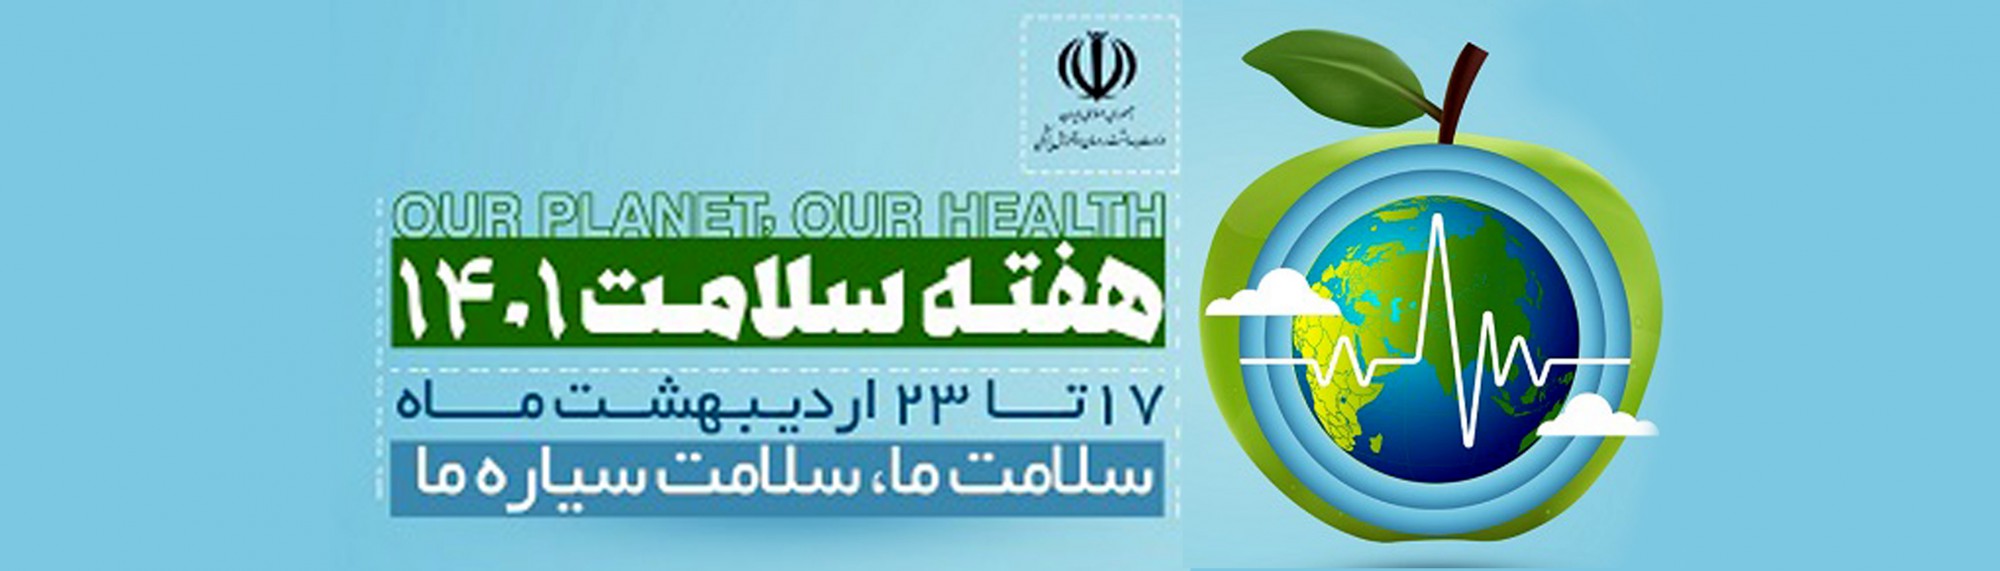 روز شمار هفته سلامت اعلام شد/ «سلامت ما، سلامت سیاره ما» شعار هفته سلامت